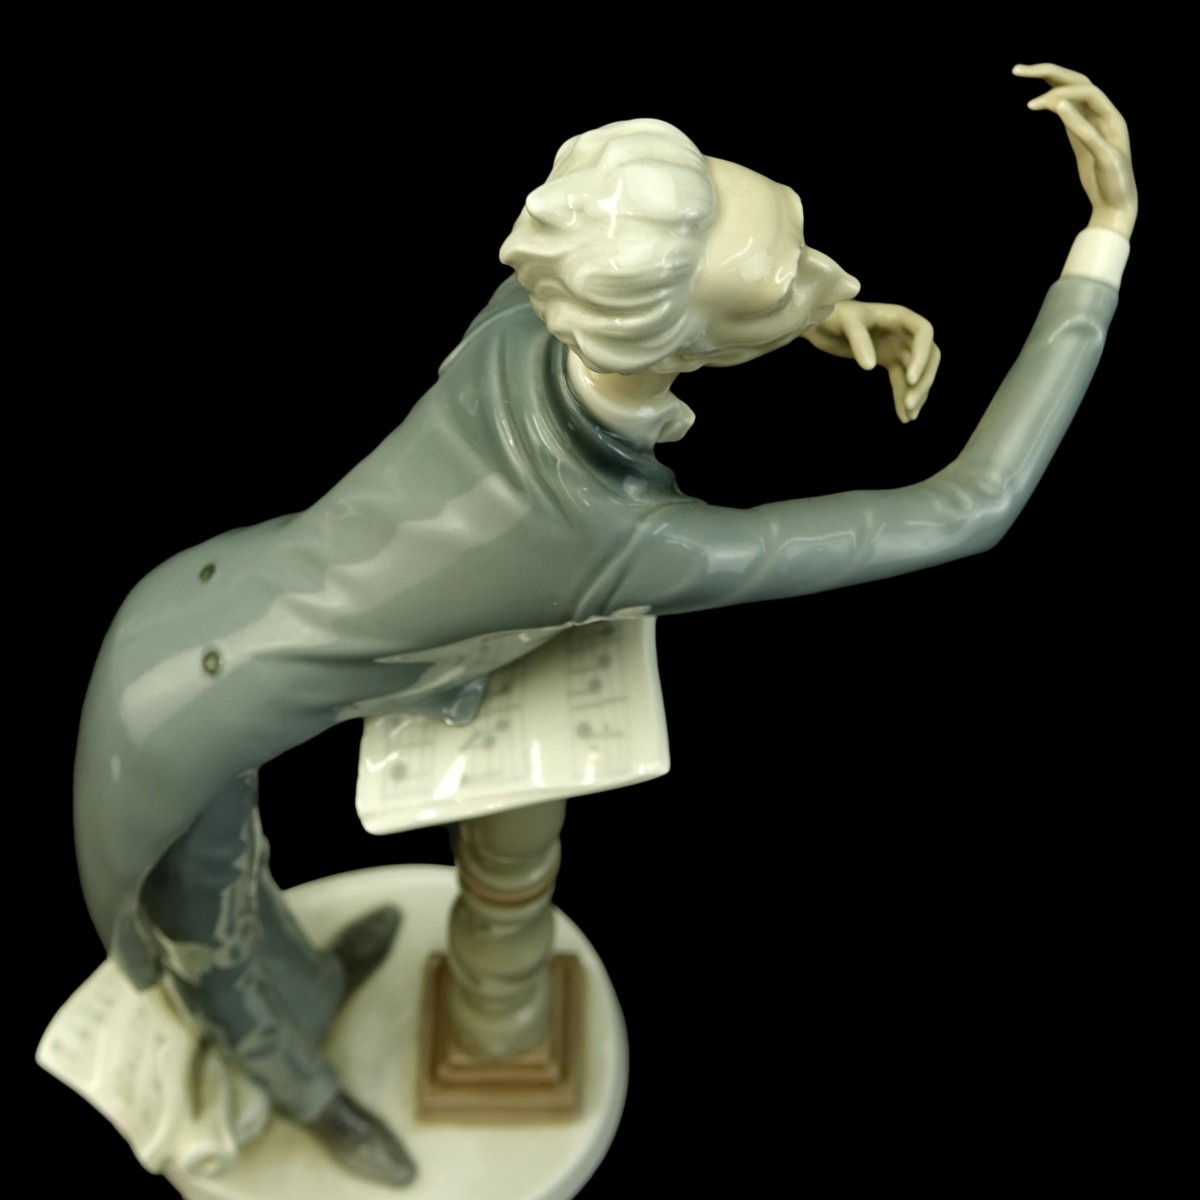 Lladro "Orchestra Conductor" Figurine